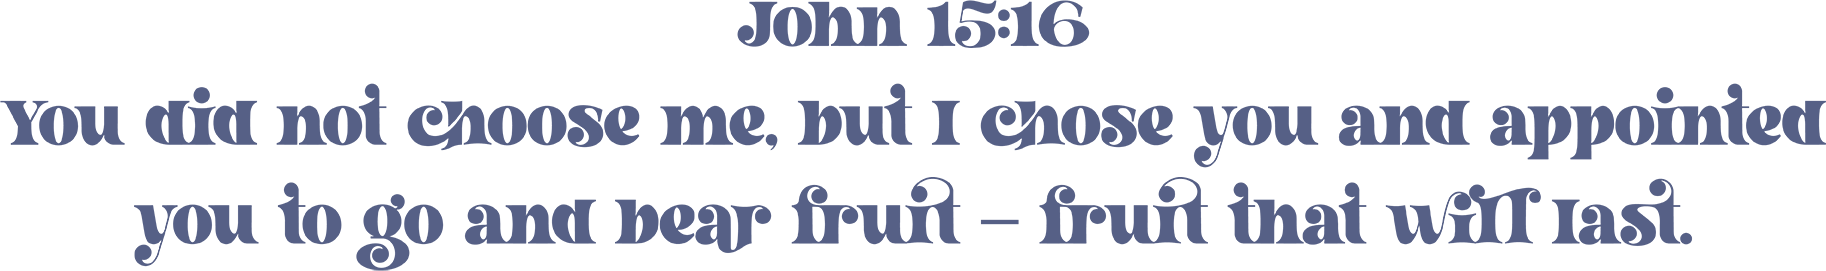 Scripture verse John 15:16